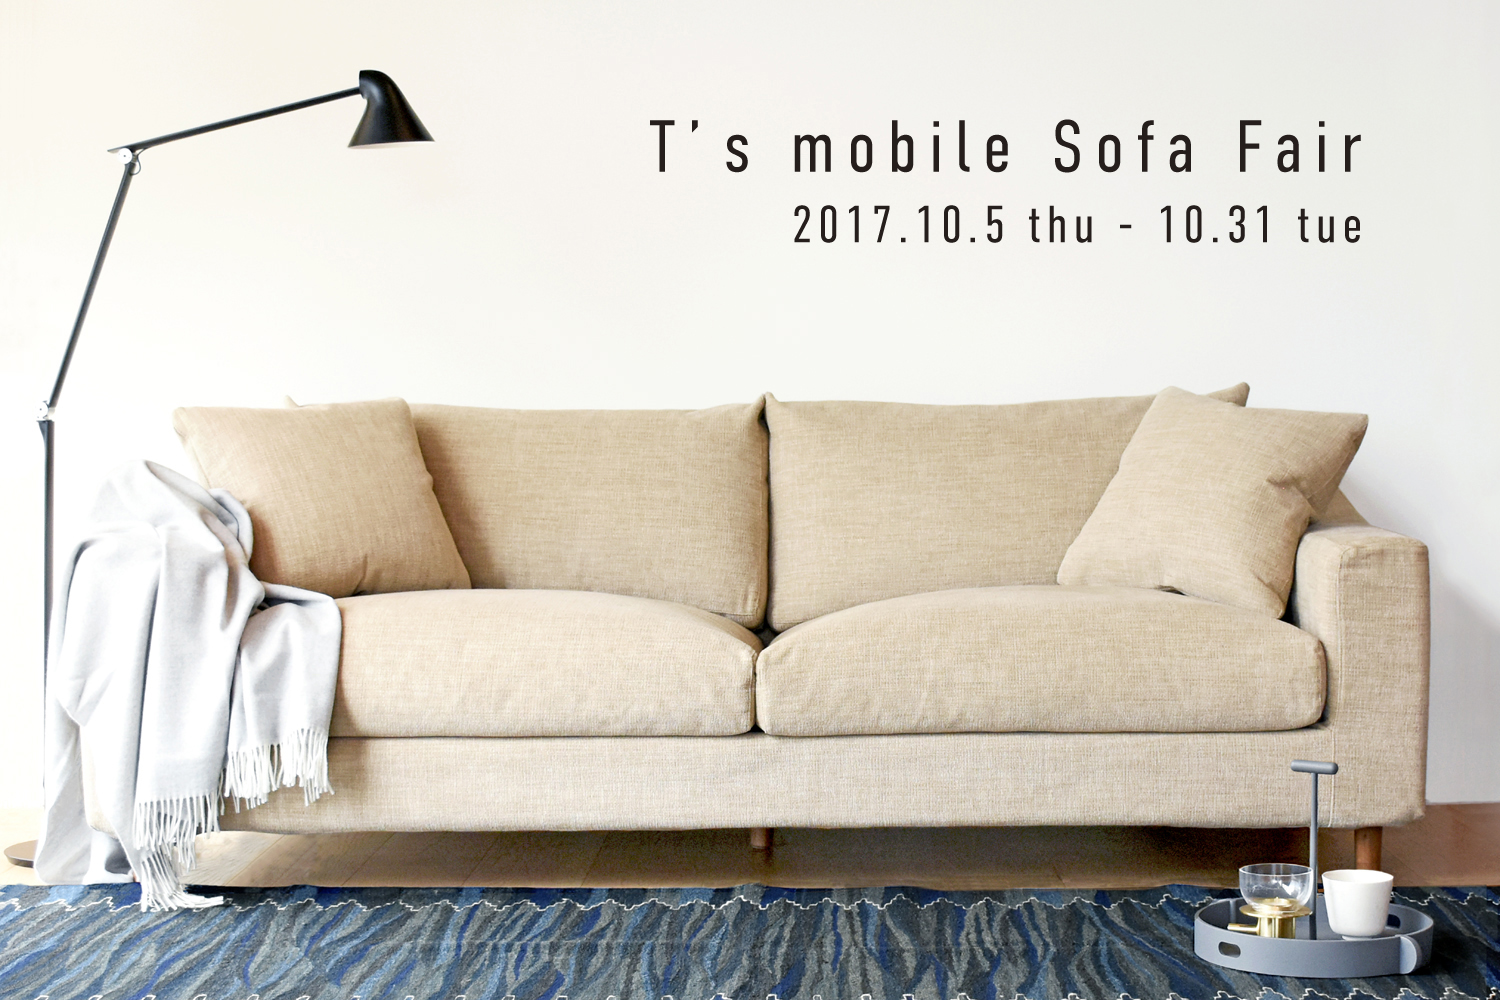 T’s mobile Sofa Fair